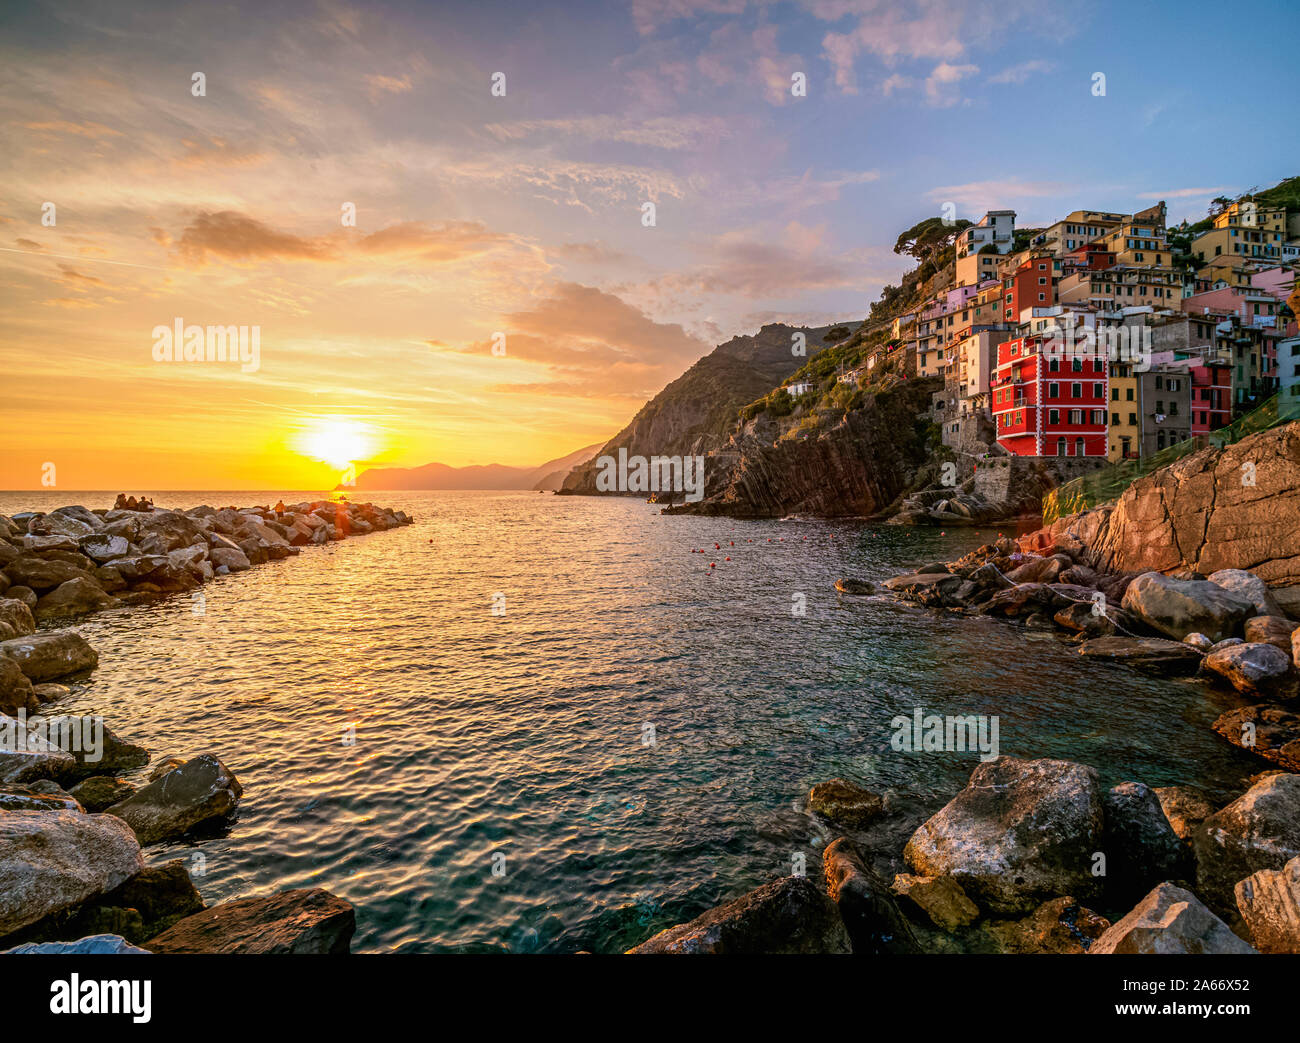 Village de Riomaggiore au coucher du soleil, Cinque Terre, UNESCO World Heritage Site, ligurie, italie Banque D'Images